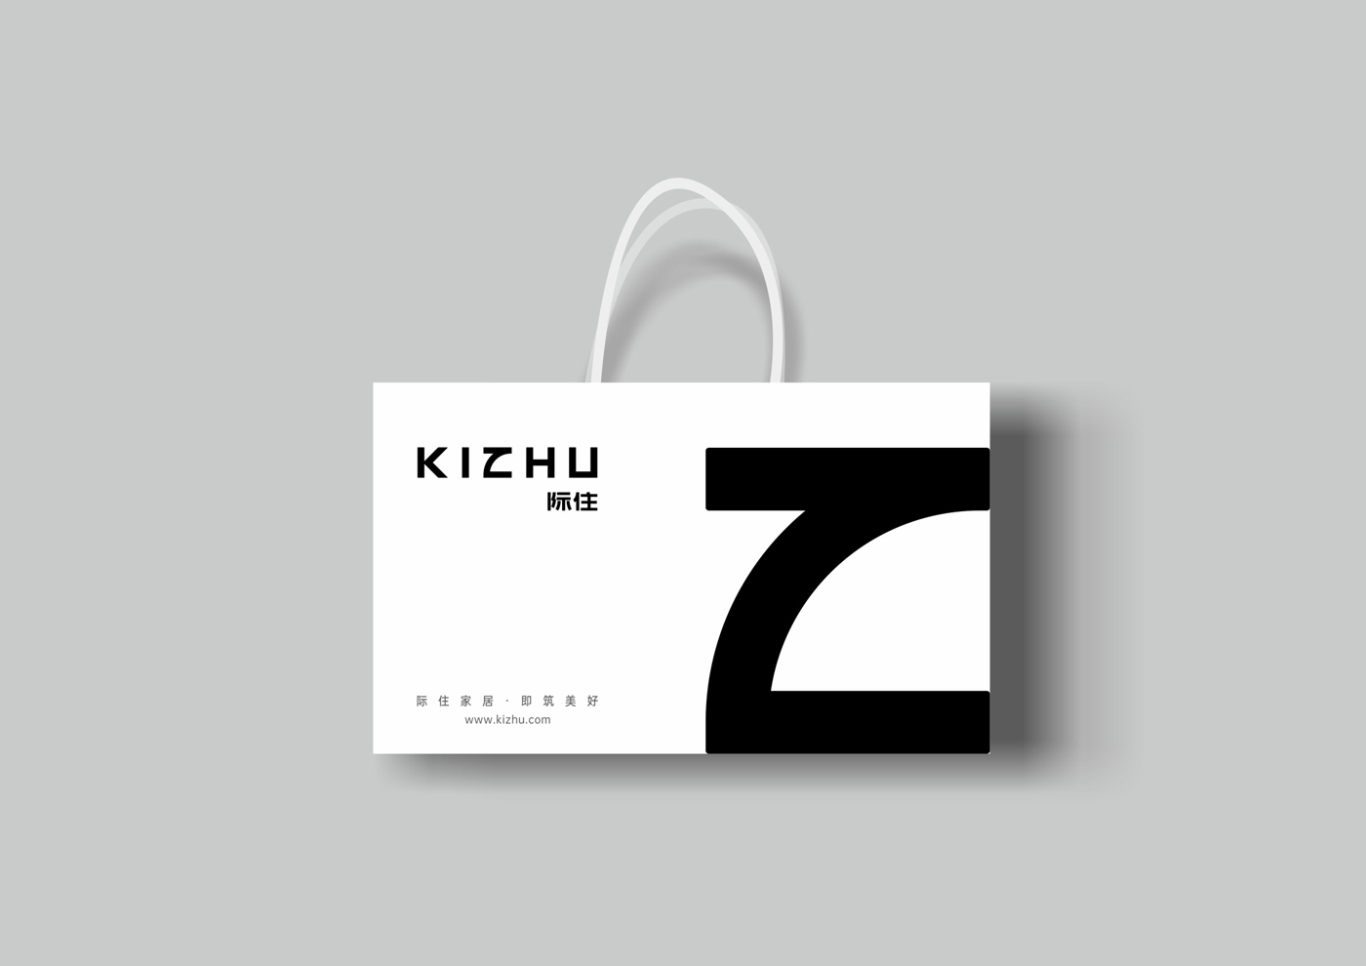 Kizhu 际住家居品牌形象设计图11